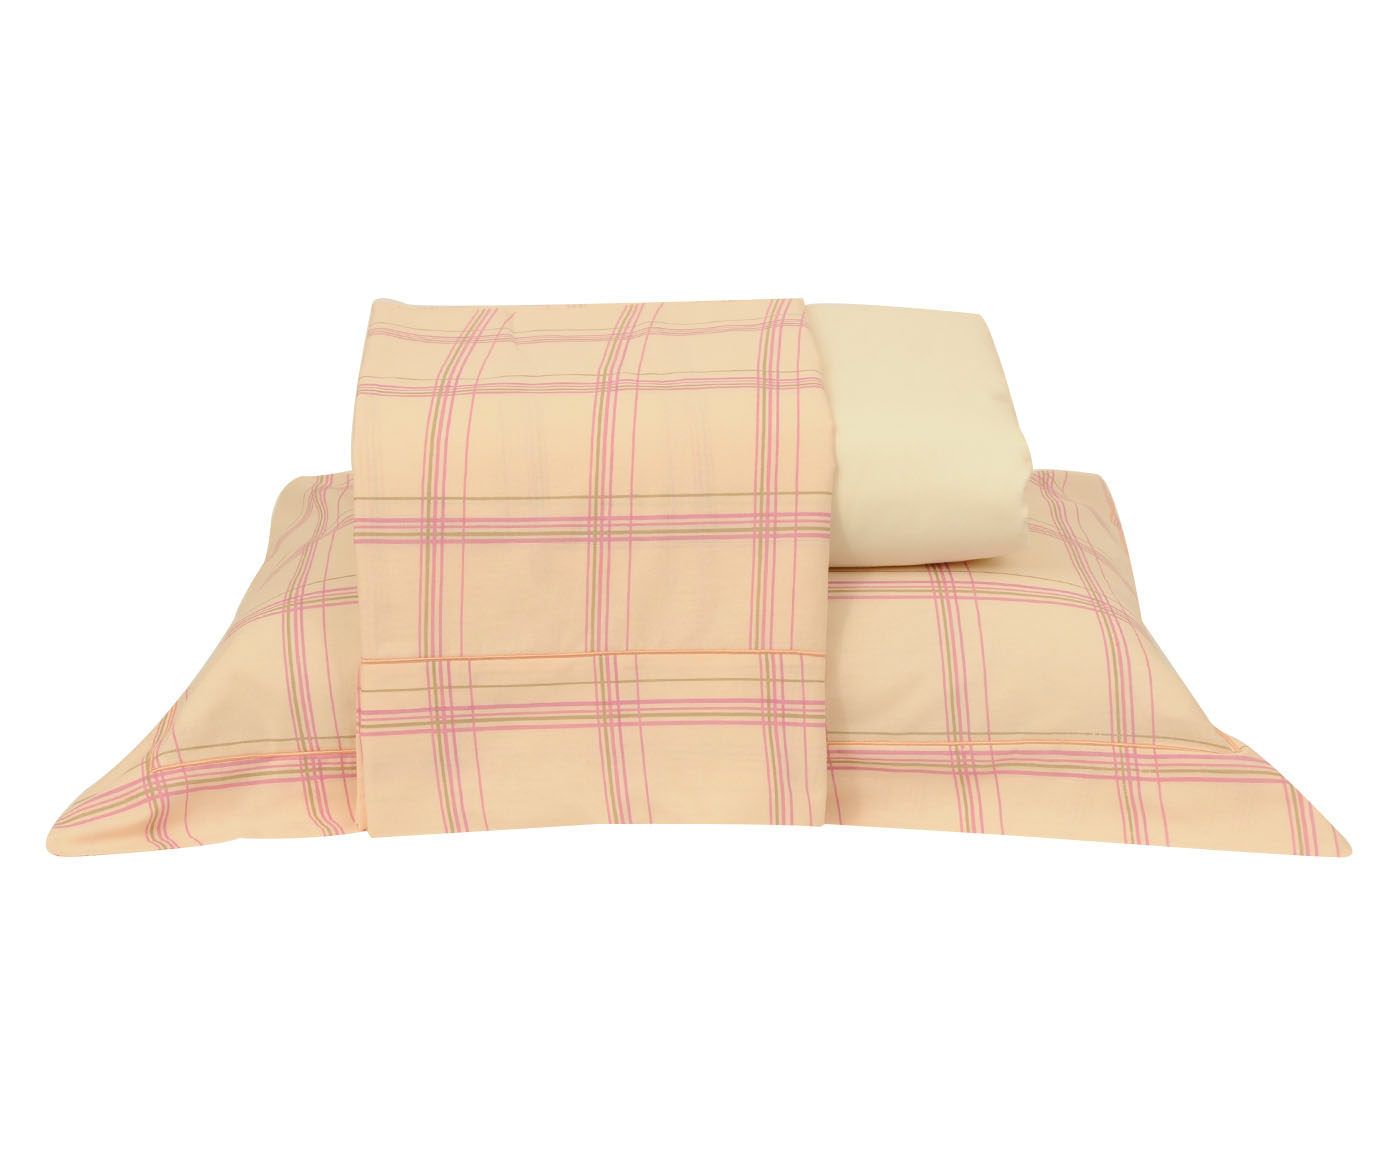 Jogo de lençol versatt stripes para cama queen size 150 fios | Westwing.com.br